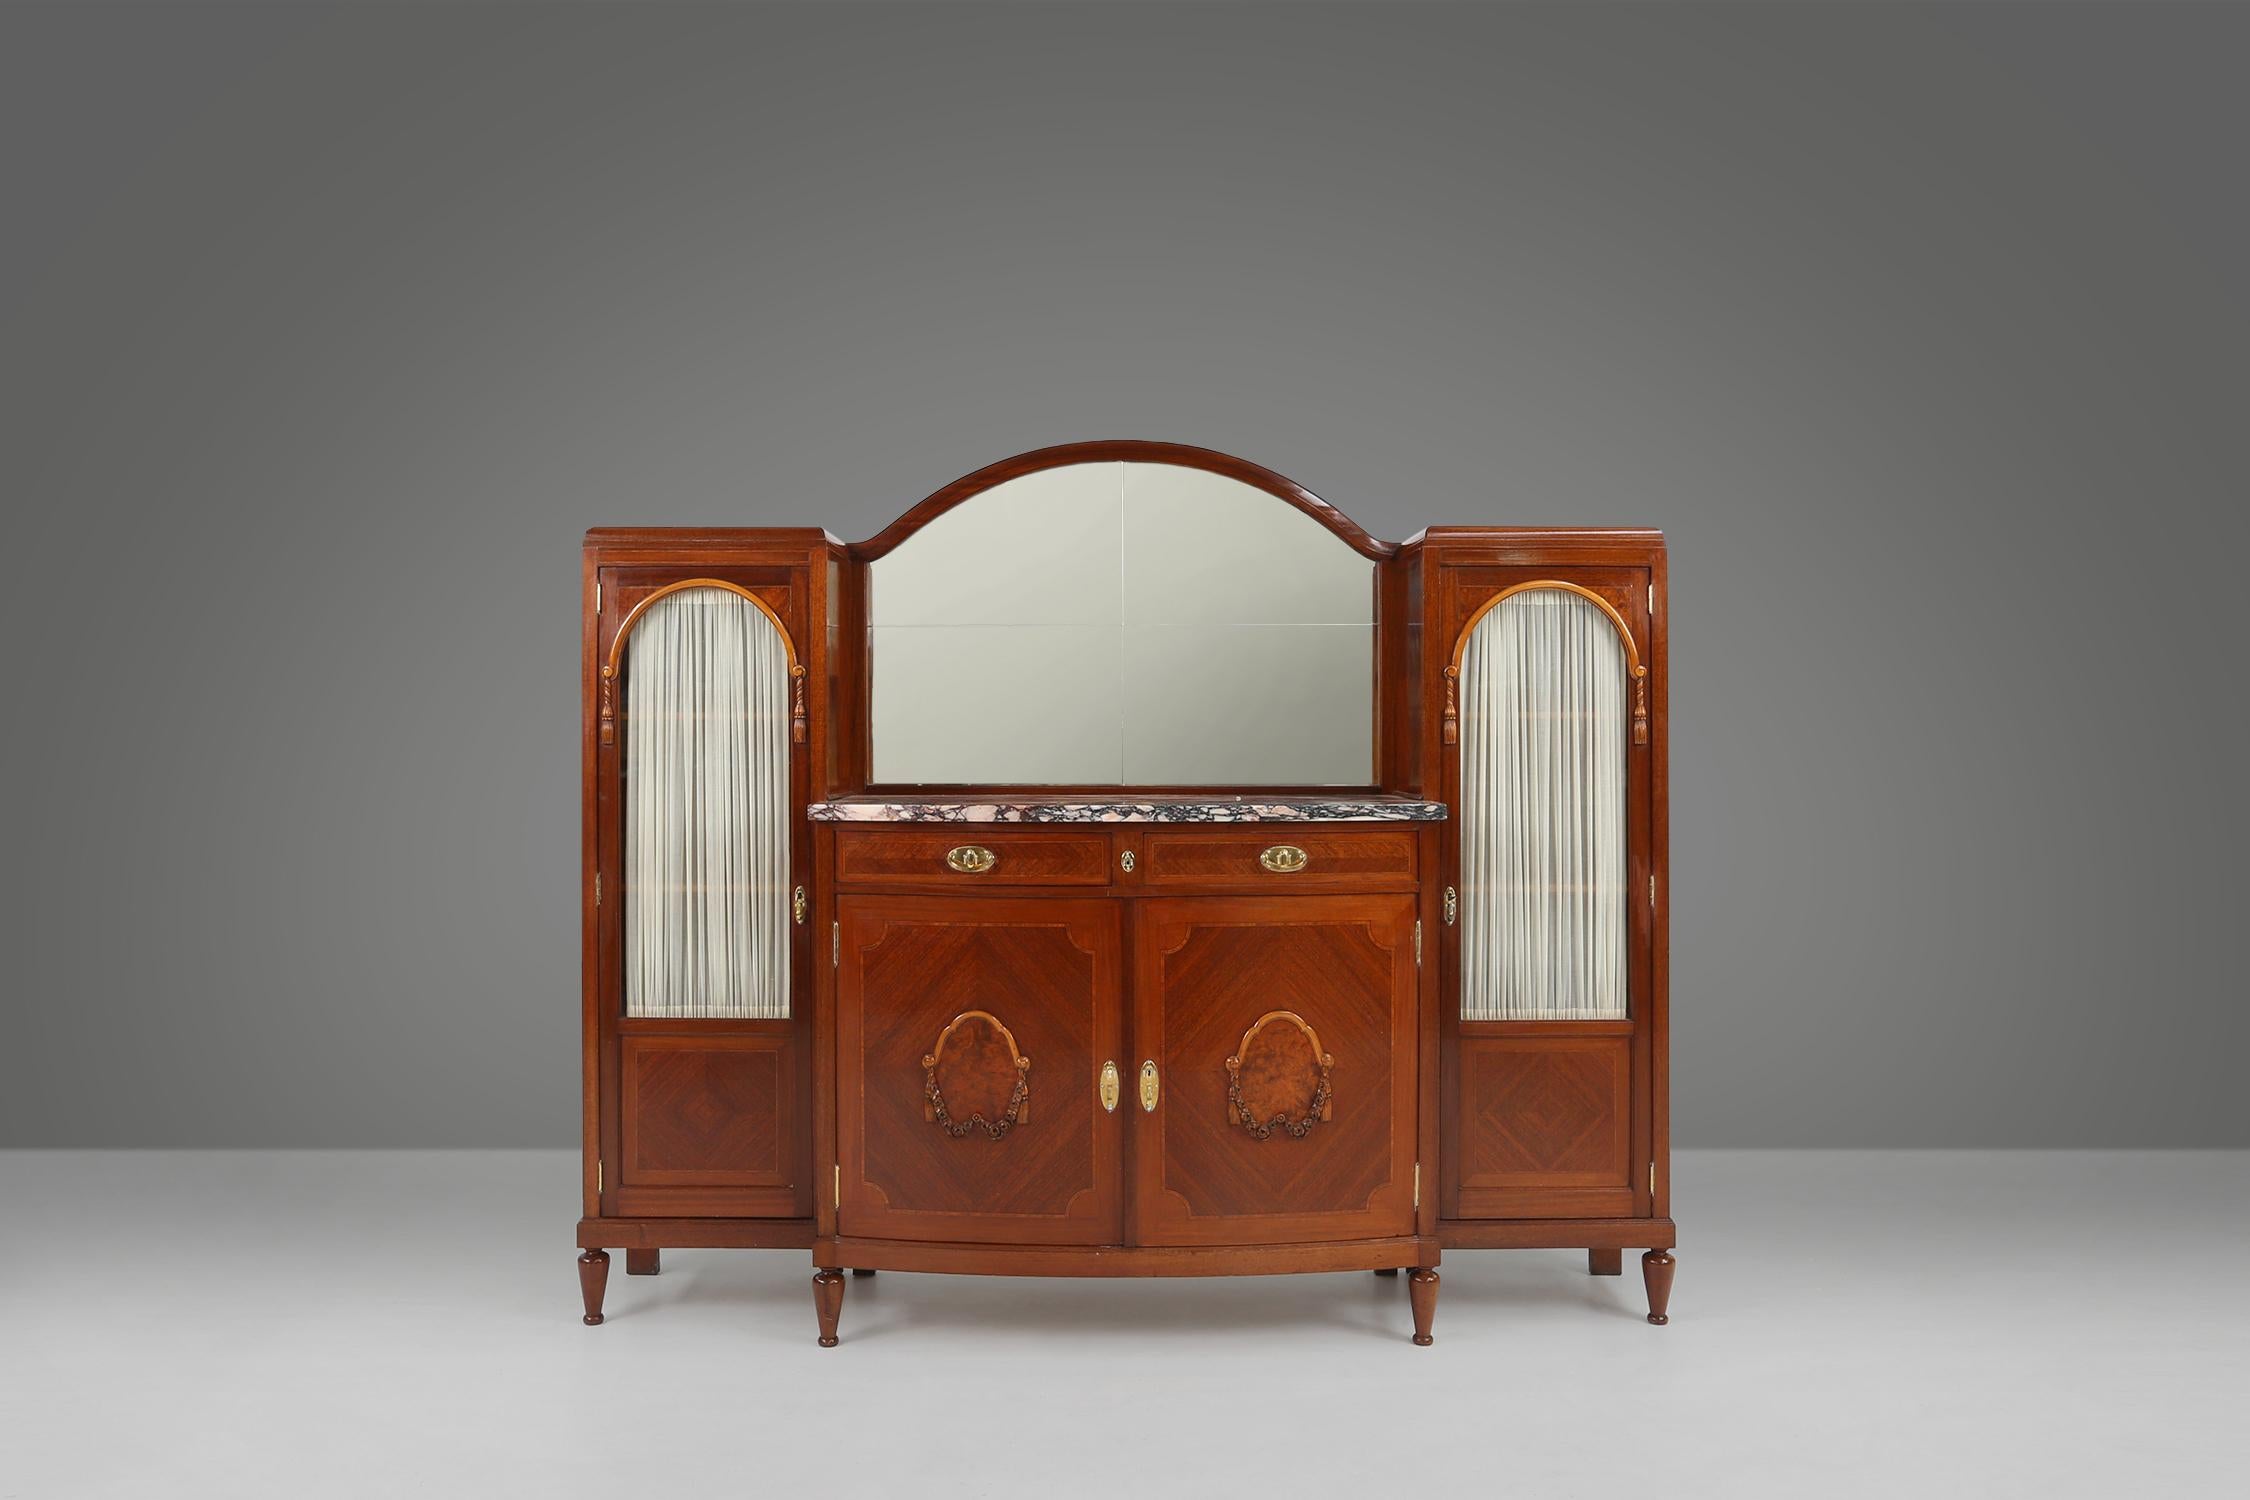 Cette armoire a été fabriquée en 1930 par De Coene en Belgique. Fabriqué en matériaux de haute qualité et en excellent état.

L'armoire est dotée de deux armoires latérales en verre et d'un rideau à l'arrière. Au milieu, vous trouverez un meuble